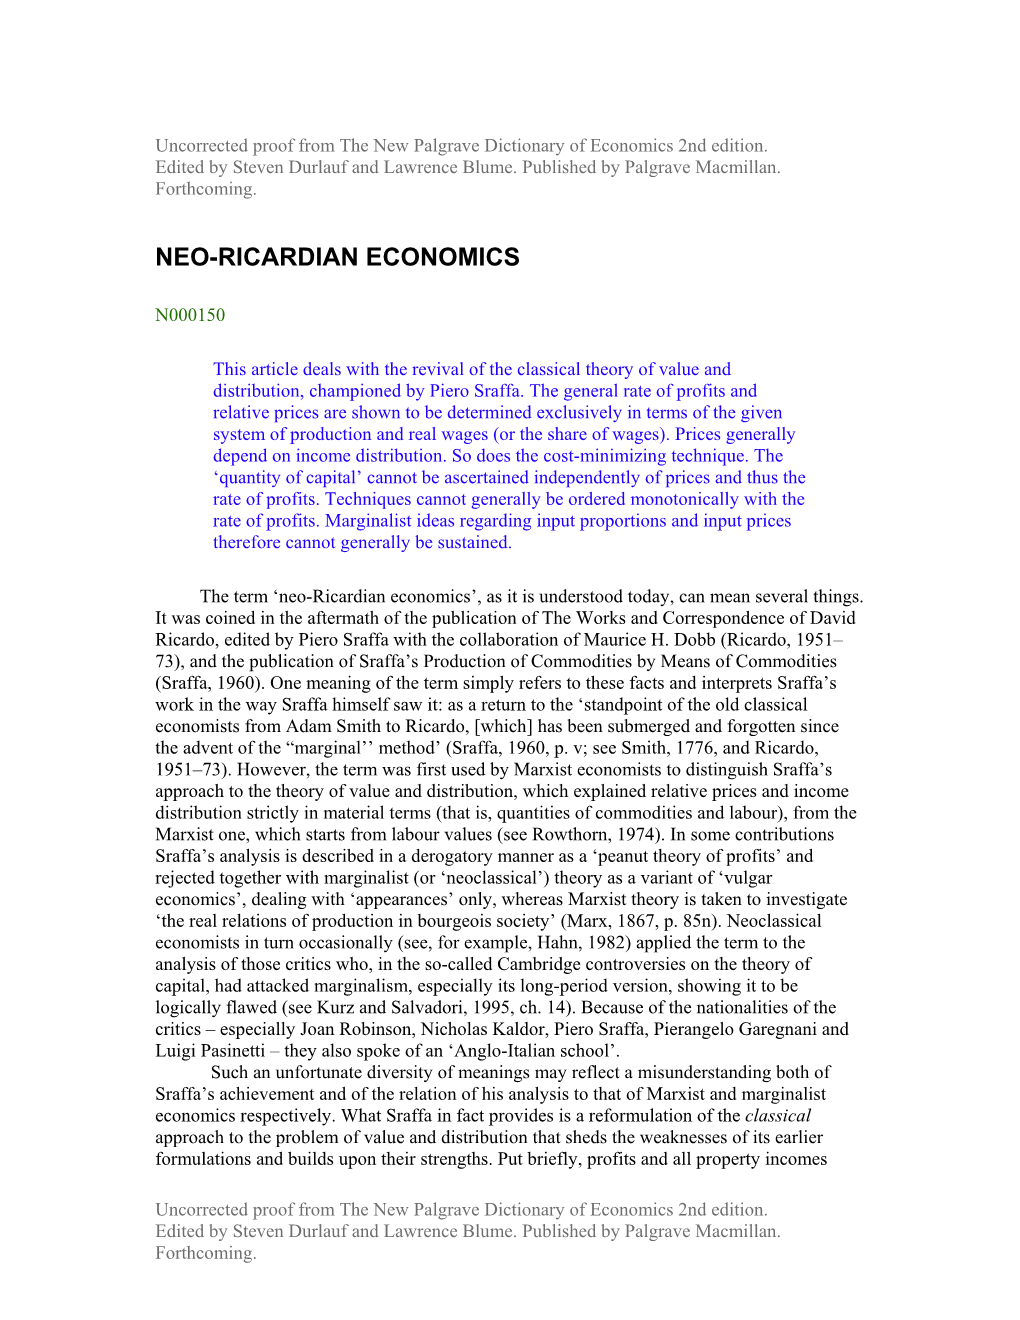 Neo-Ricardian Economics